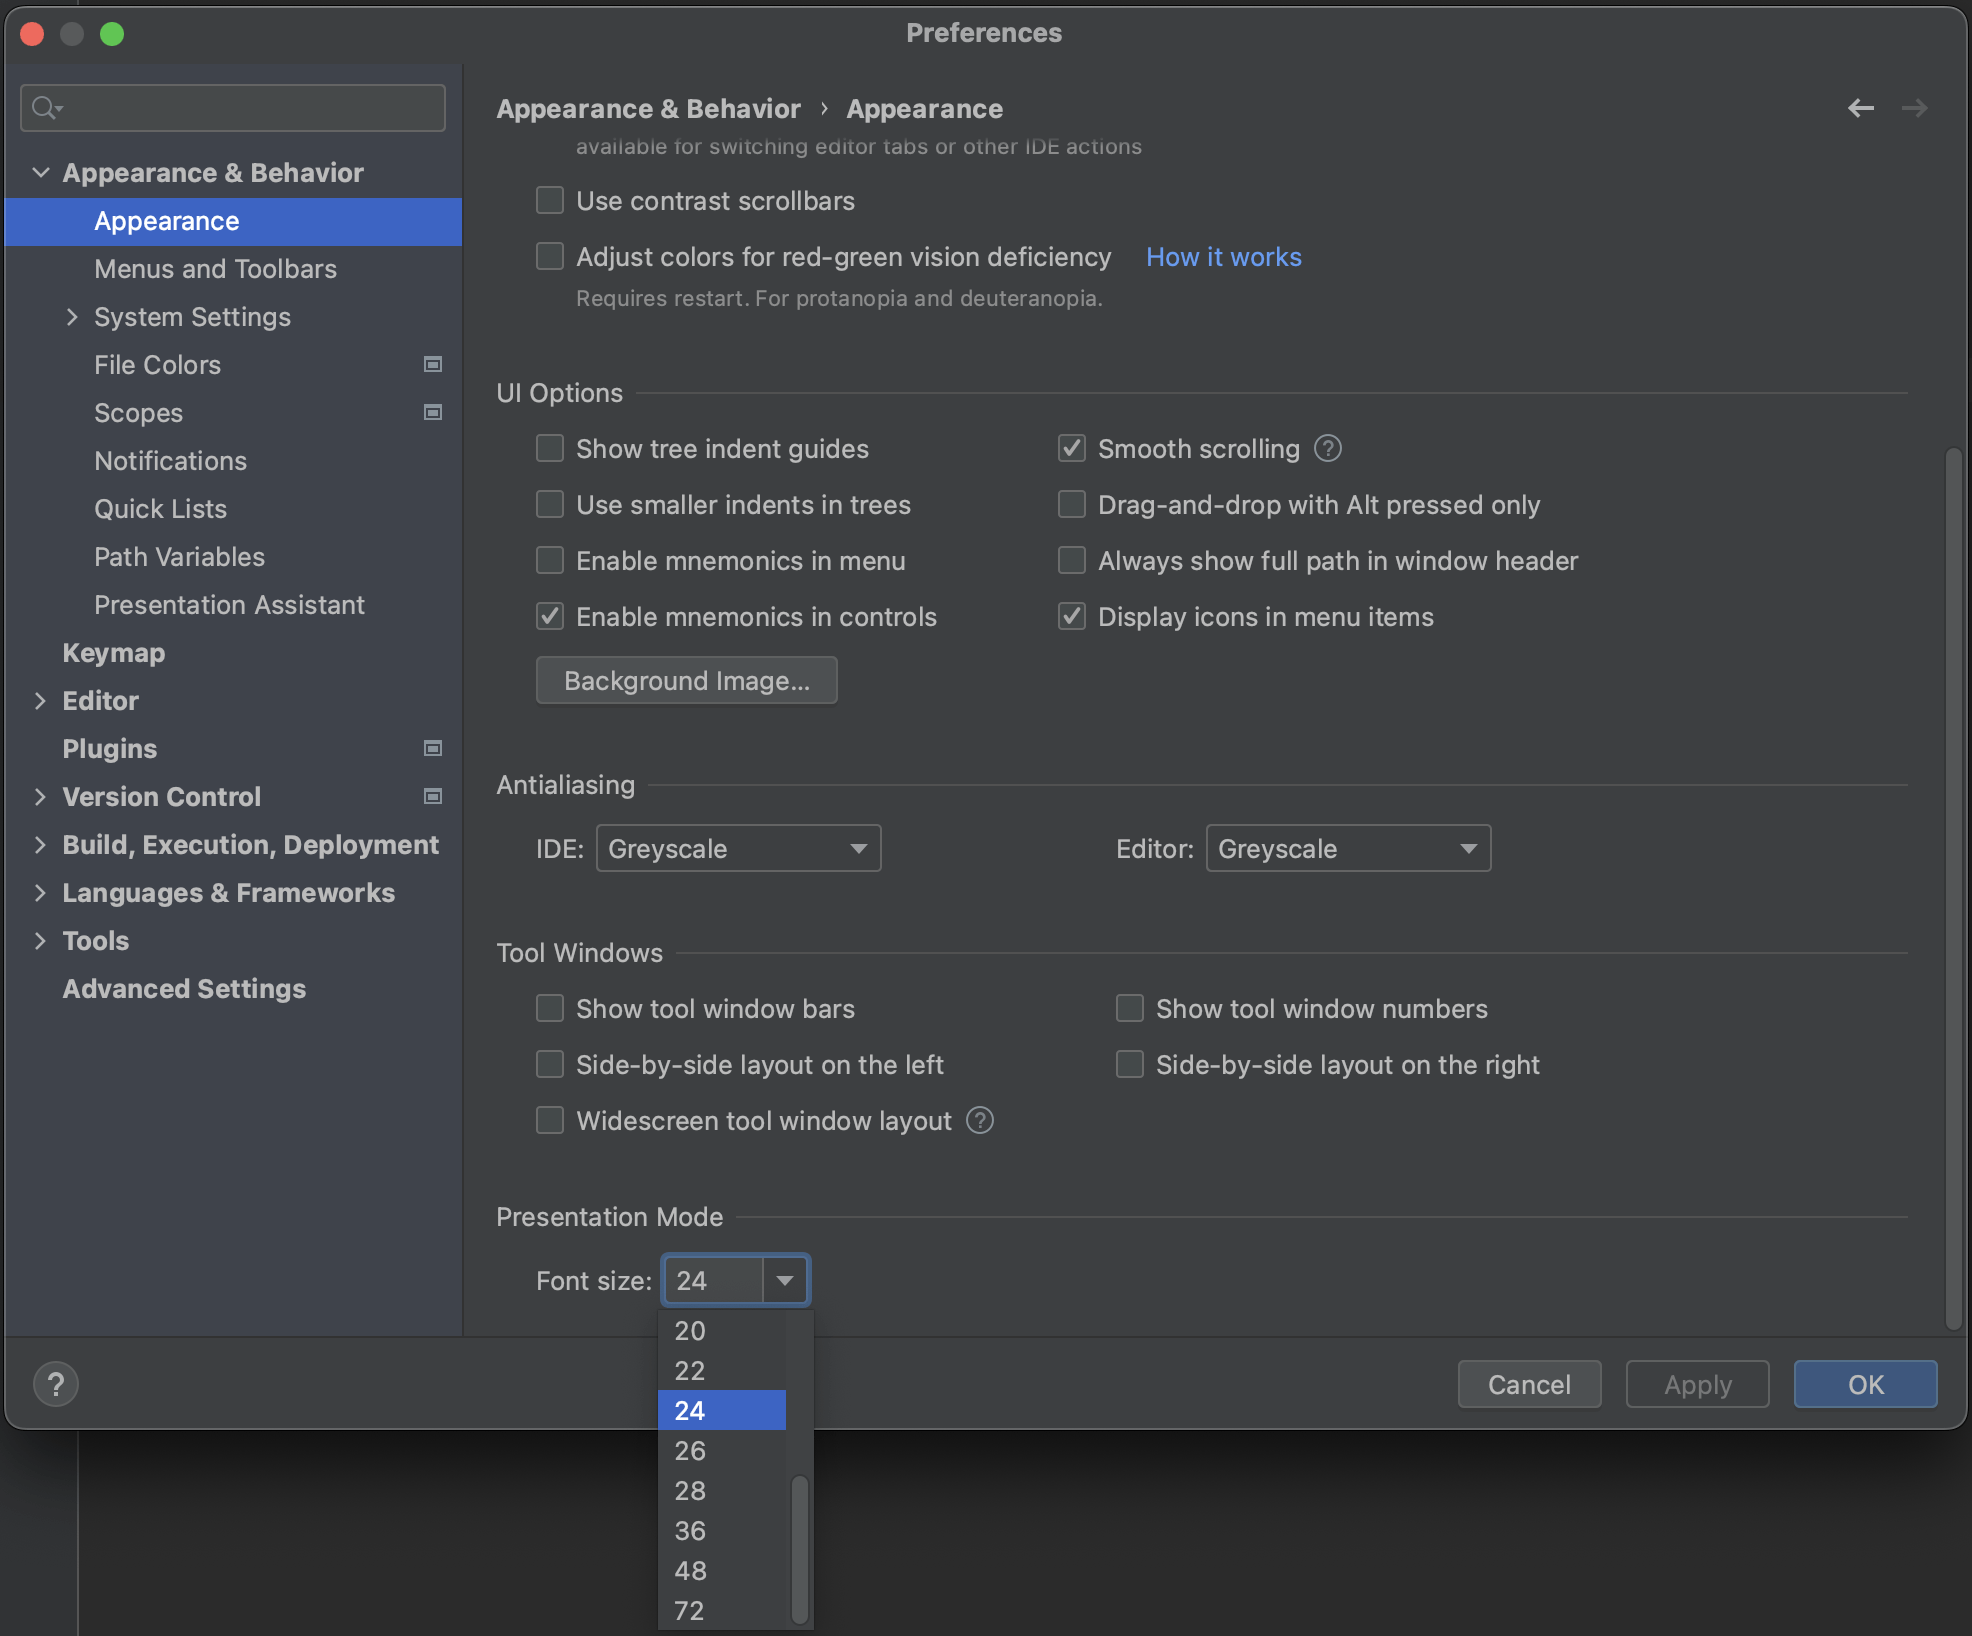 Configure Presentation Mode Font size